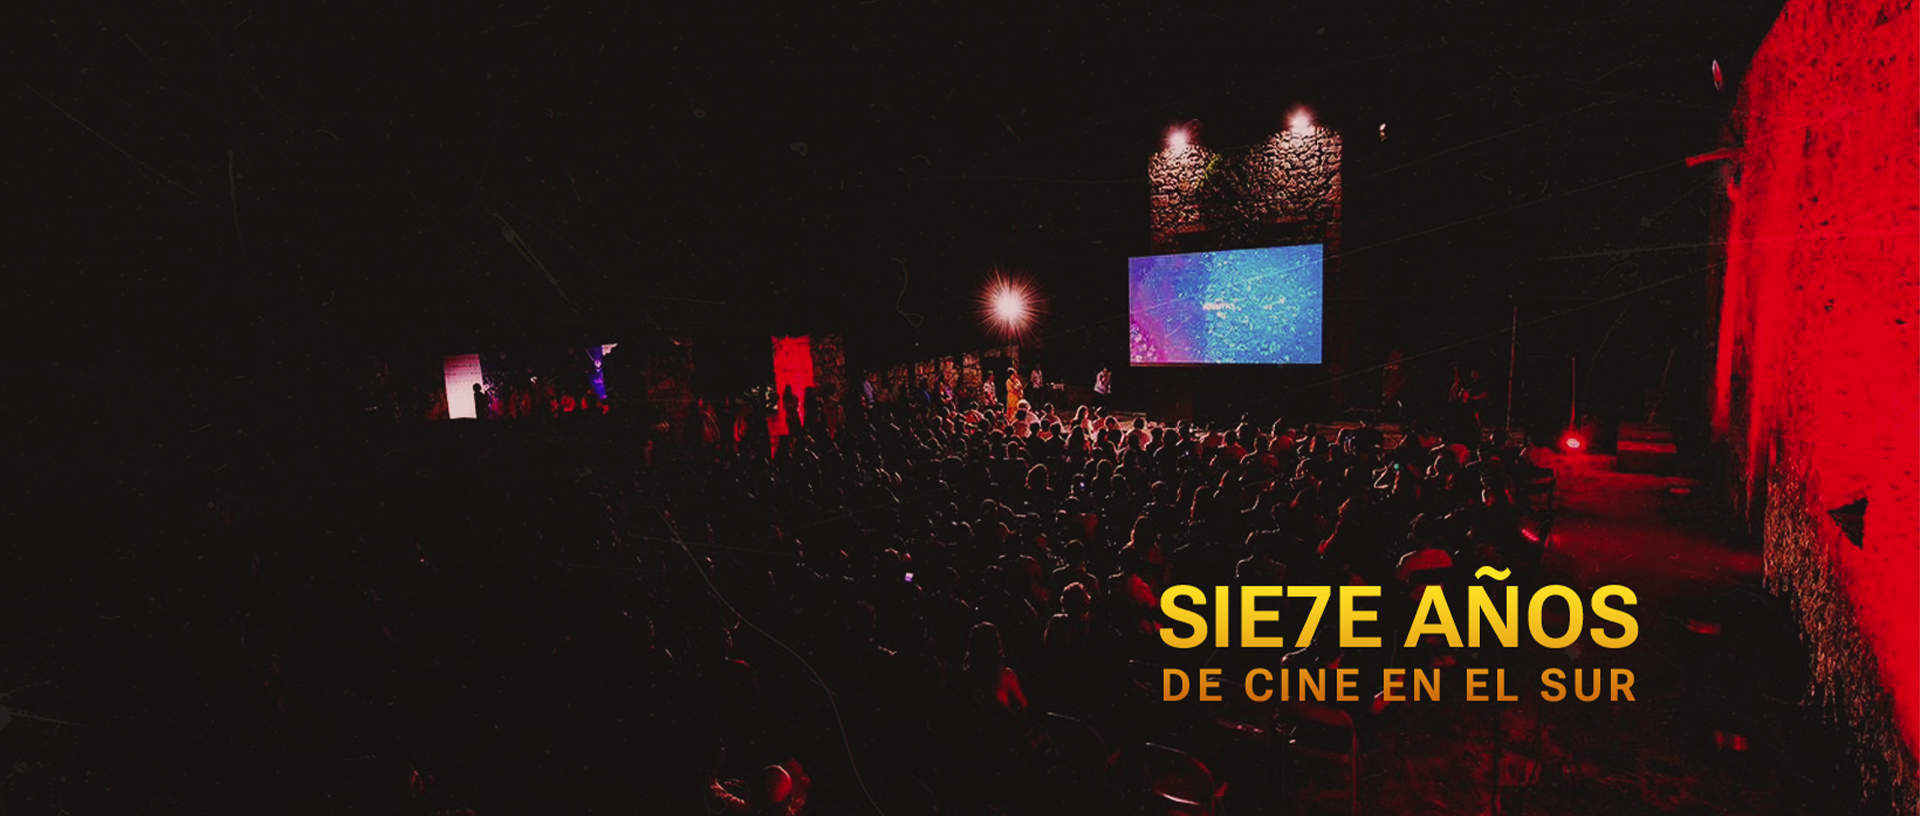 SIE7TE AÑOS - Web Banner